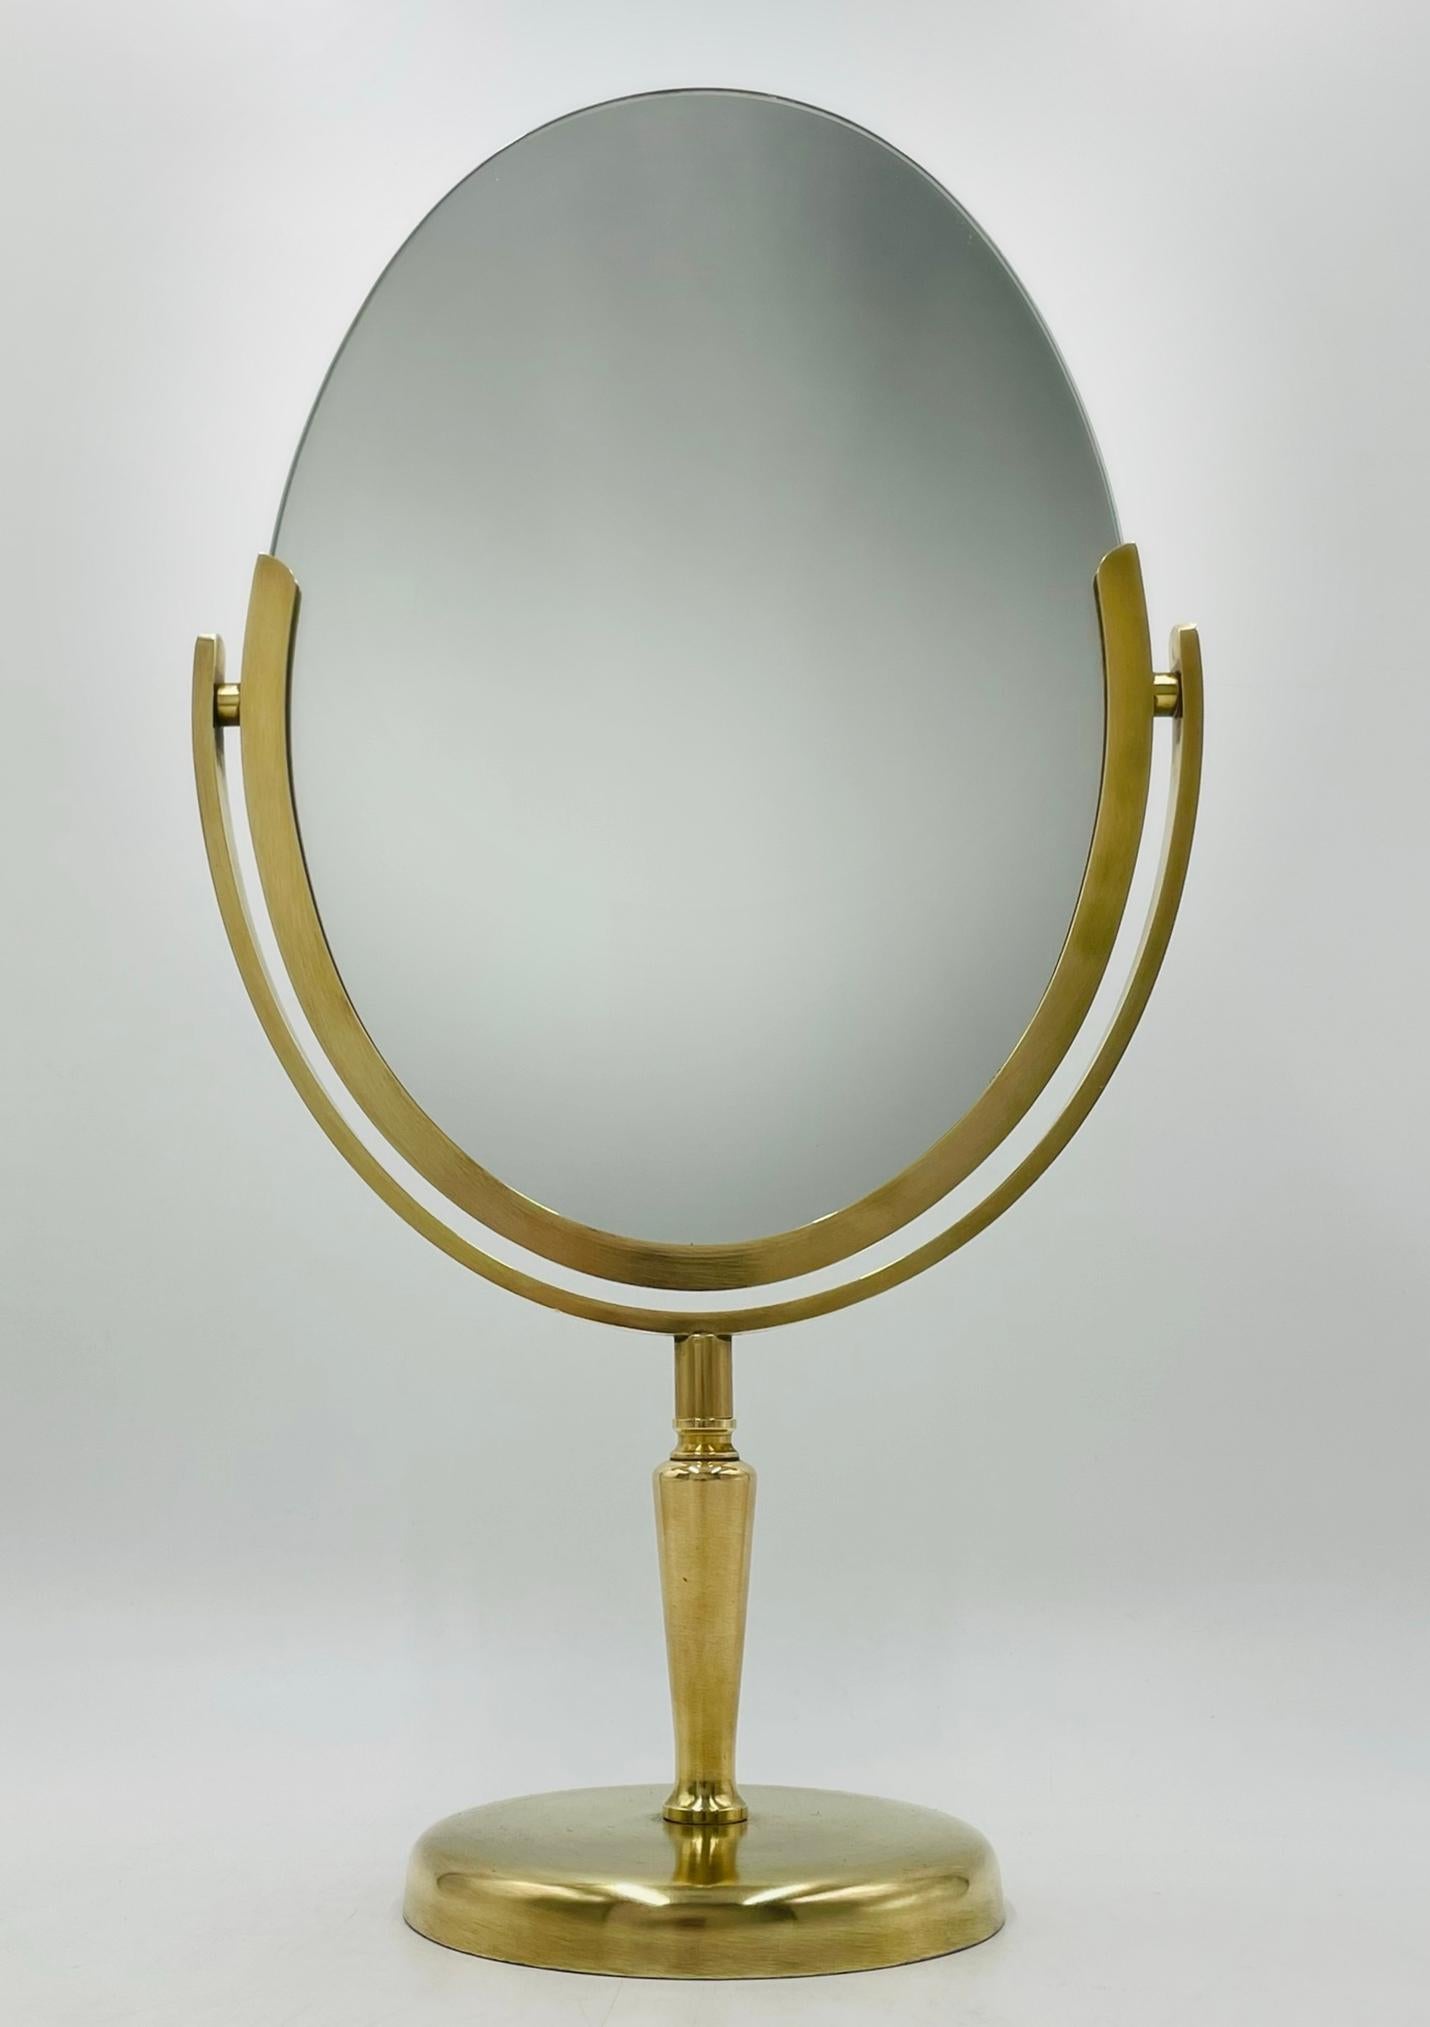 Voici l'exquis miroir de courtoisie double face en laiton massif de Charles Hollis Jones, USA 1970 - une pièce intemporelle qui respire le luxe et la sophistication. Fabriqué à la main aux États-Unis à partir de laiton massif de haute qualité, ce